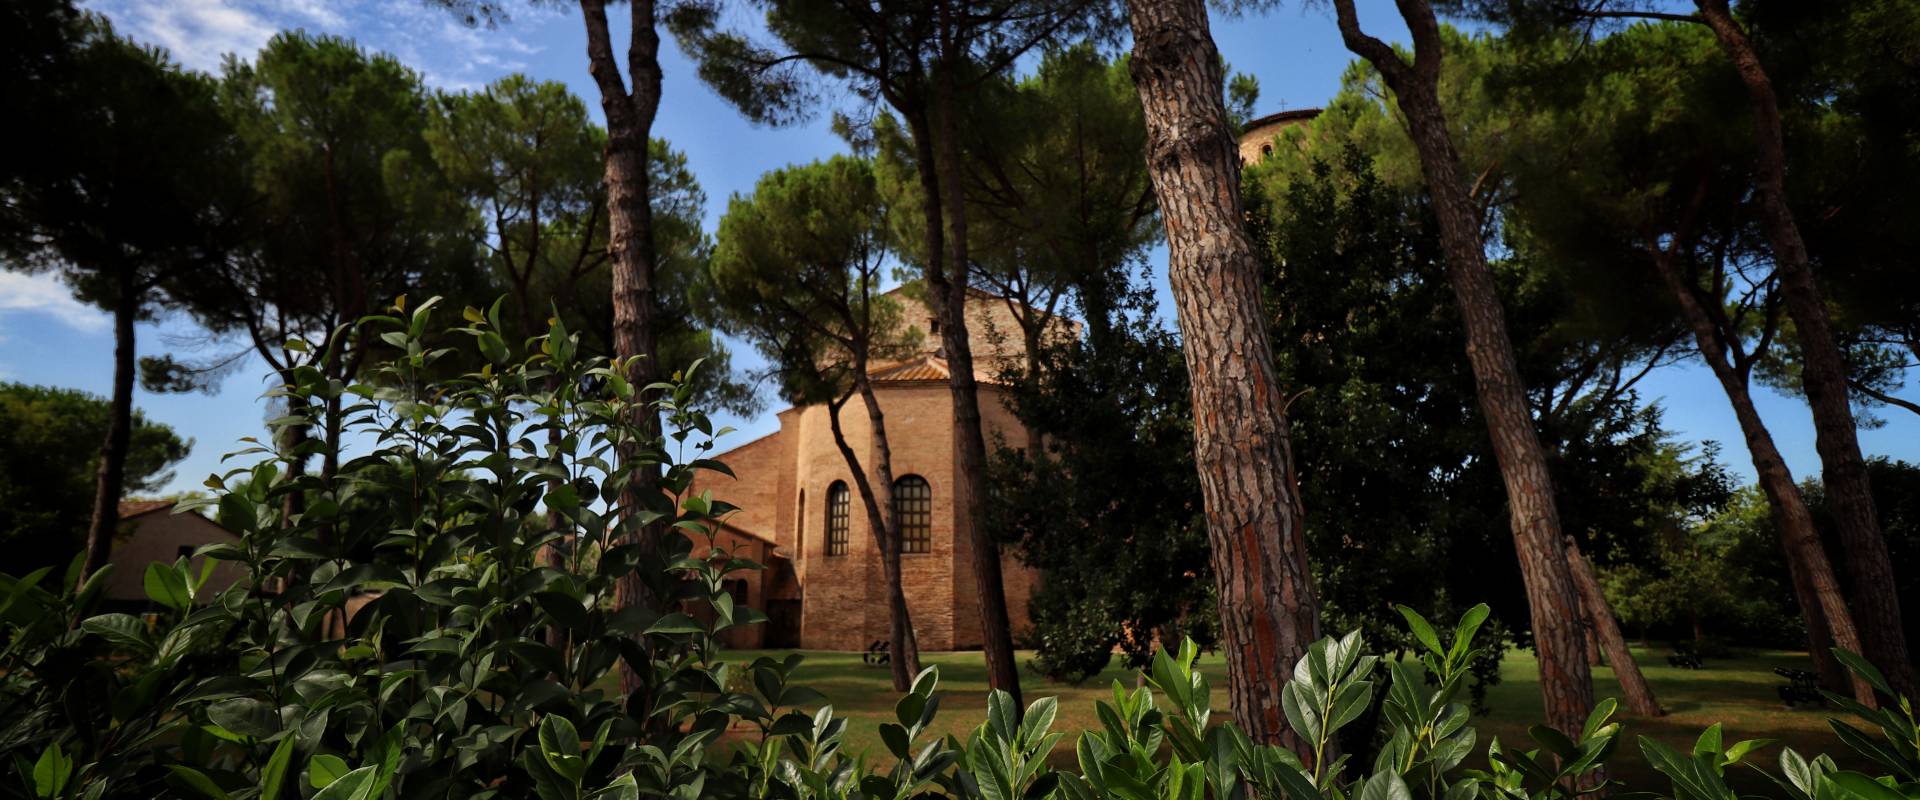 Basilica di Sant'Apollinare in Classe, Ravenna (retro della Basilica) photo by Stefano Casano